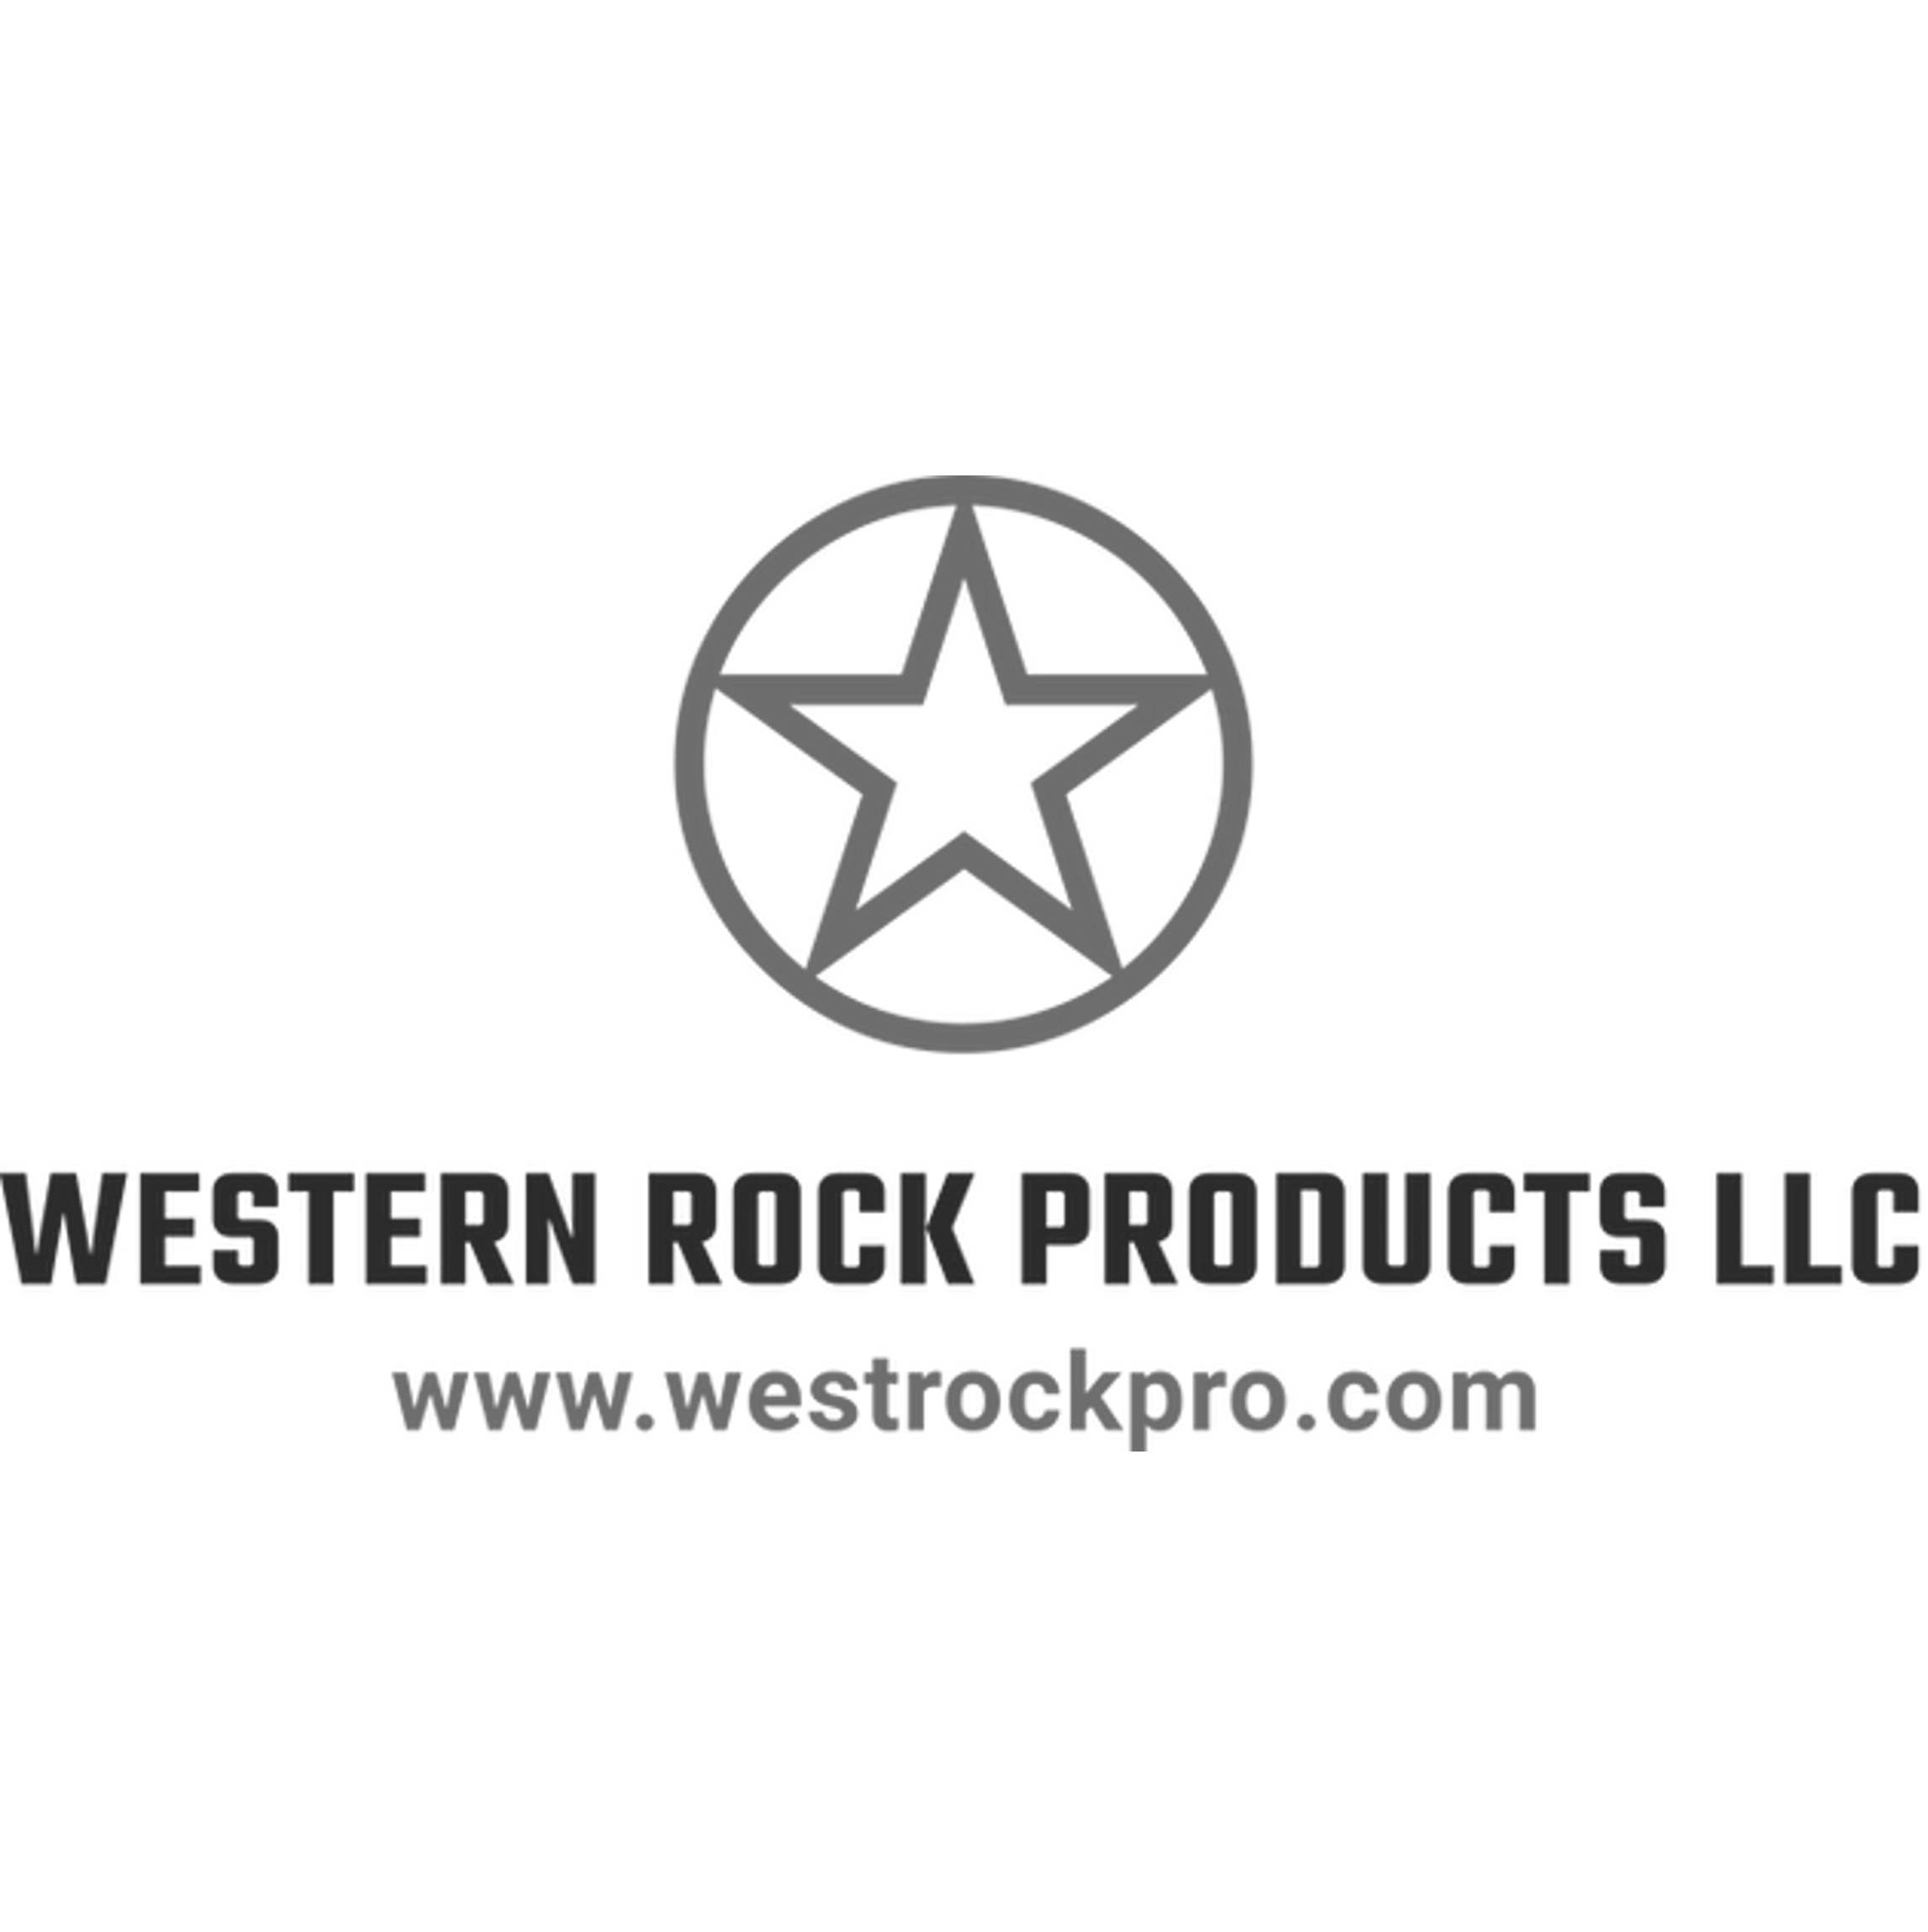 Western Rock Products LLC